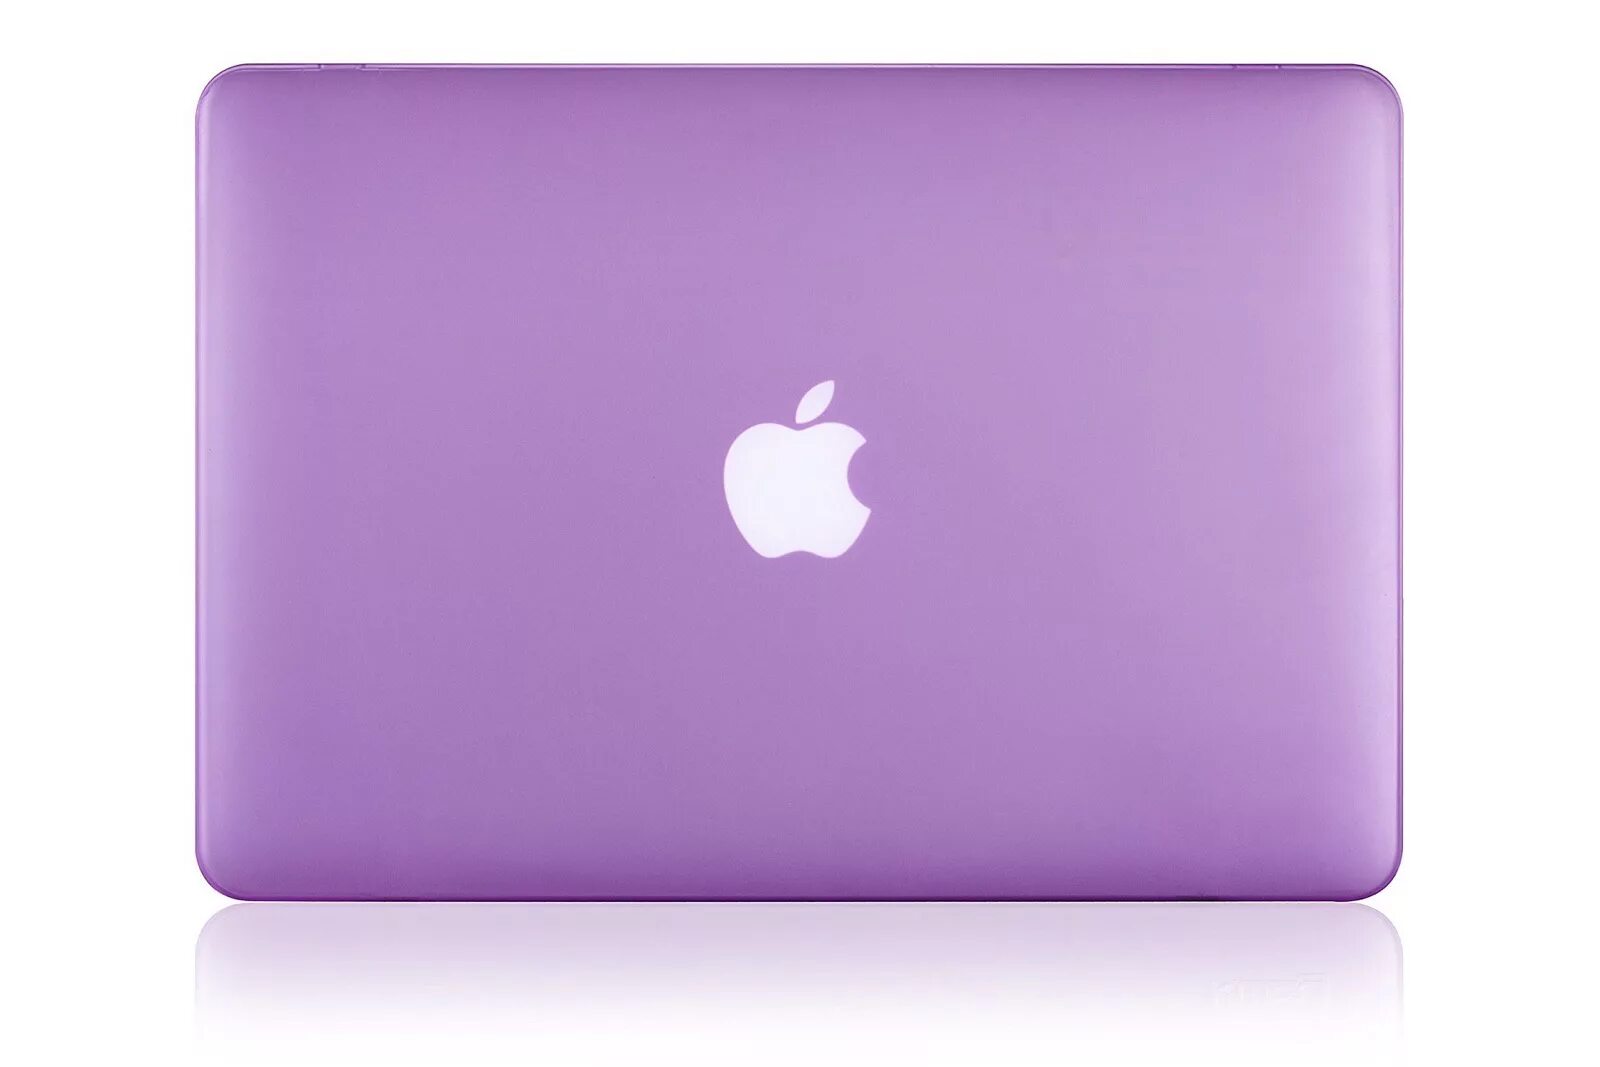 Крышка ноутбука купить. Чехол Gurdini для Apple MACBOOK Air 13 Plastic. Ноутбук Эппл фиолетовый. MACBOOK 1398 чехол. Эпл макбук фиолетовый.